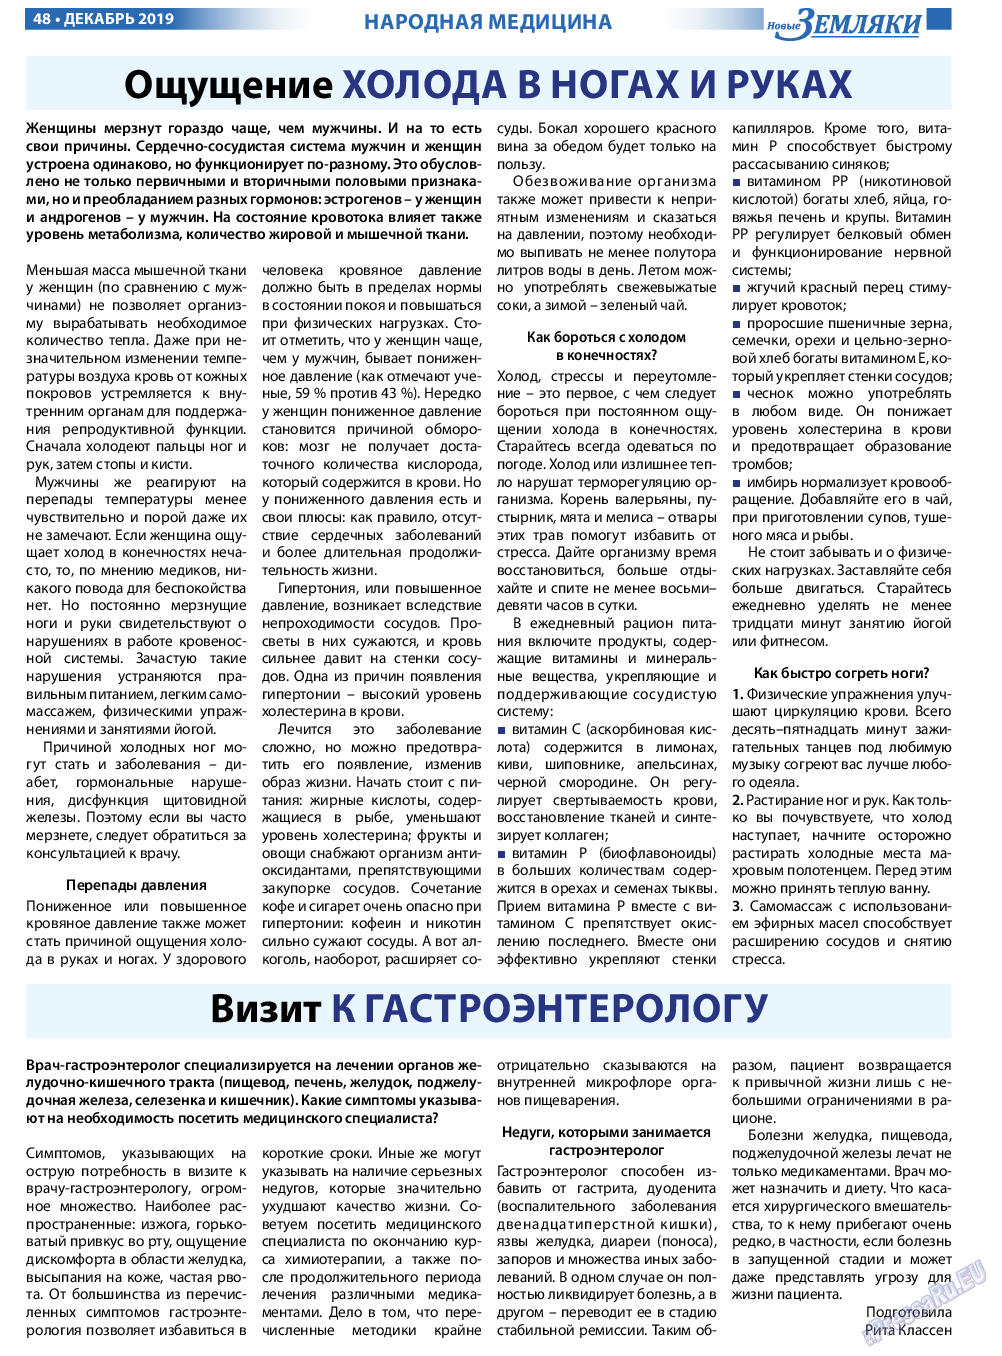 Новые Земляки, газета. 2019 №12 стр.48